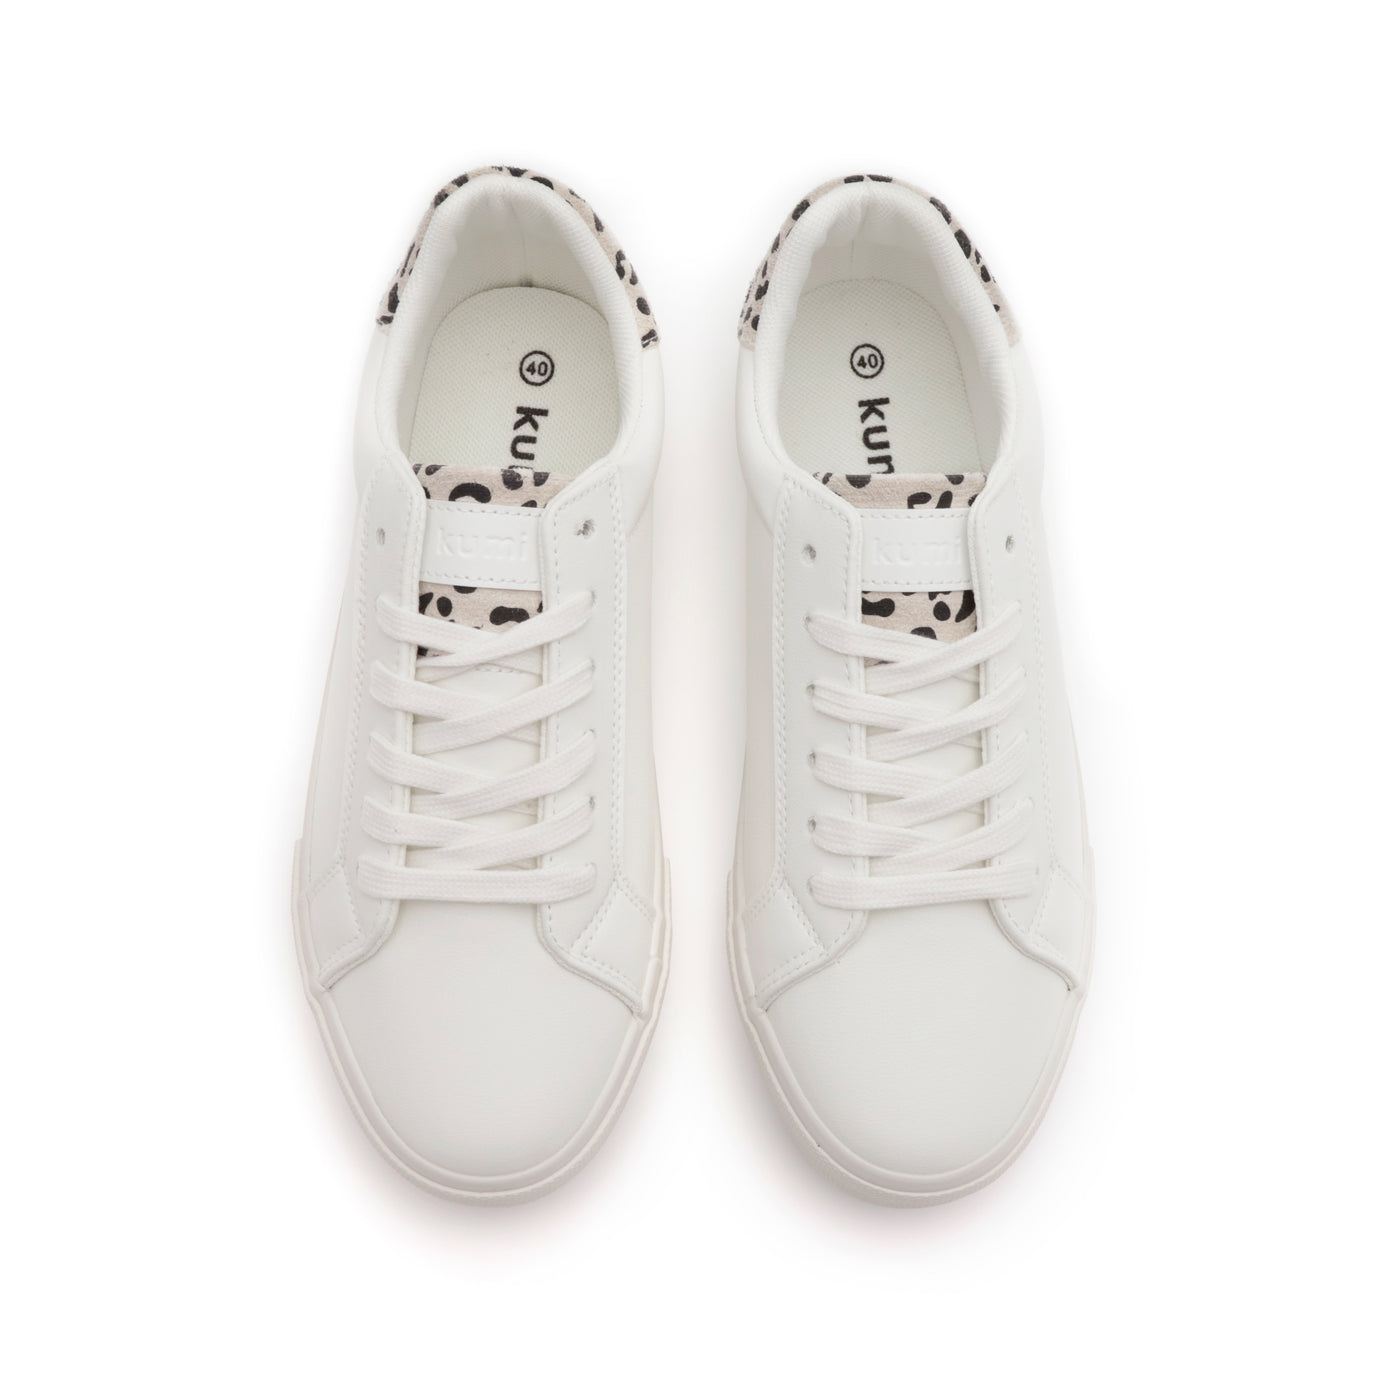 Retro sneakers White/Leopard